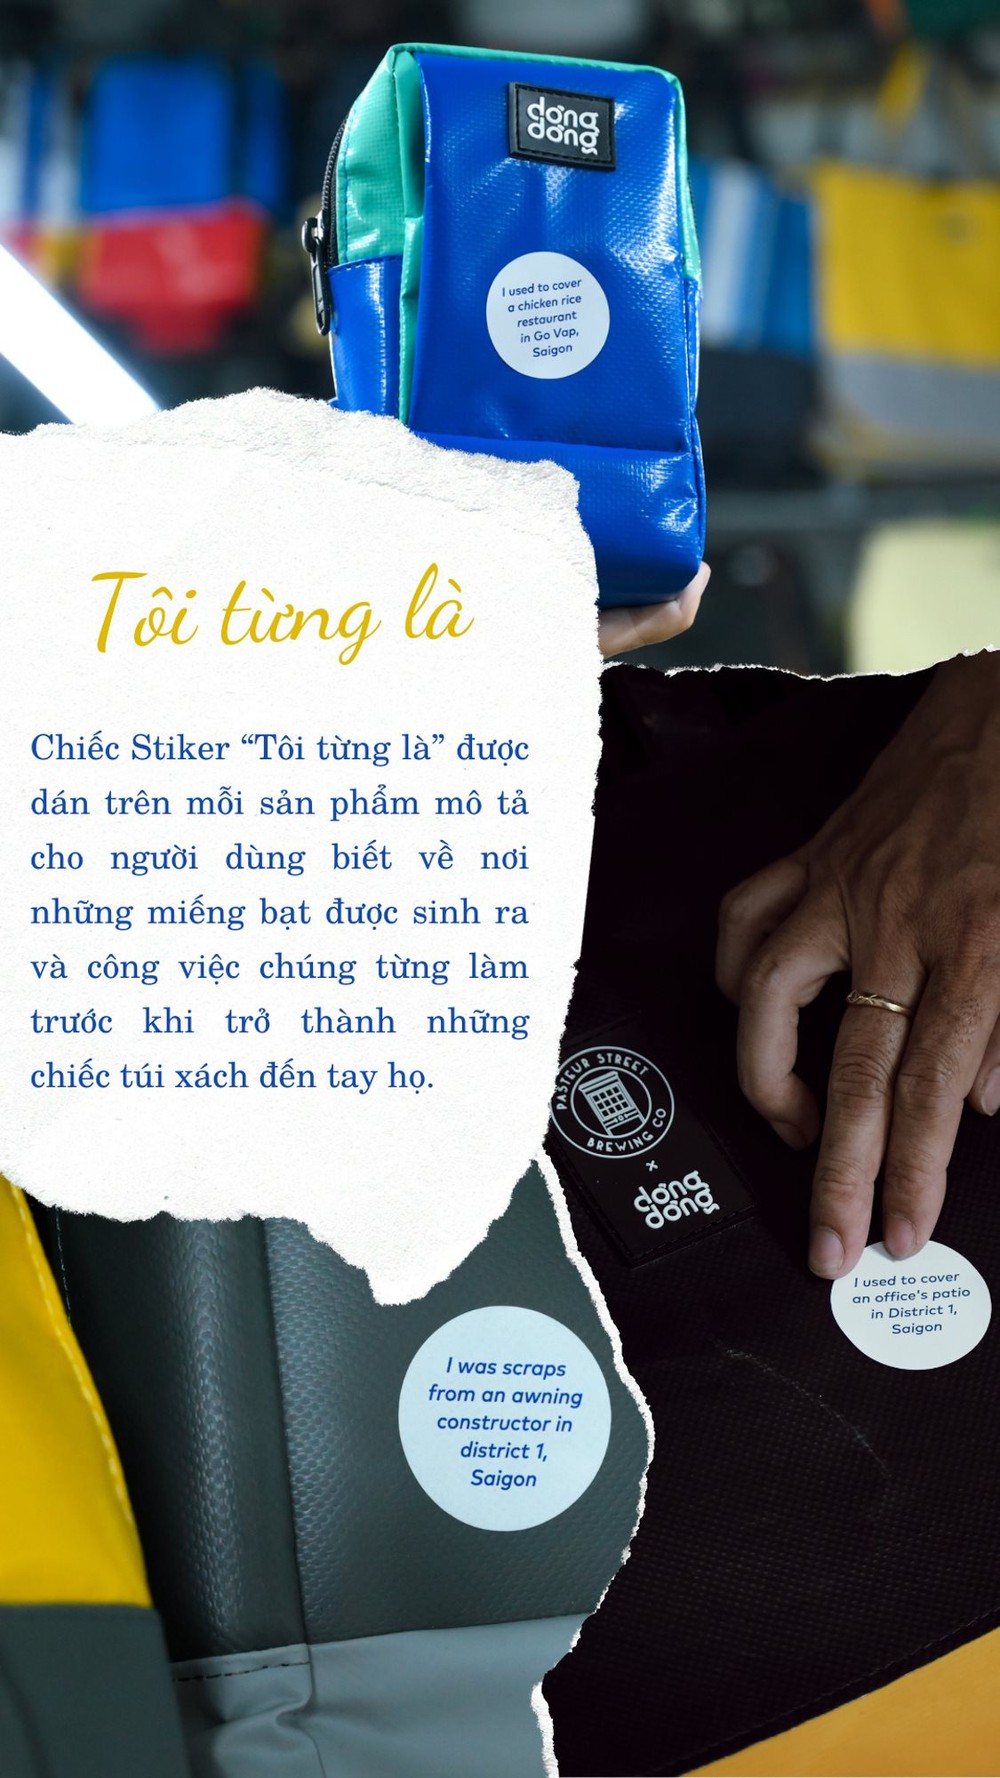 Túi thời trang Made in Vietnam từ chất liệu chẳng ai ngờ: Nhìn độ độc và giá cả, nhiều người sẽ muốn có cho mình một chiếc - Ảnh 9.